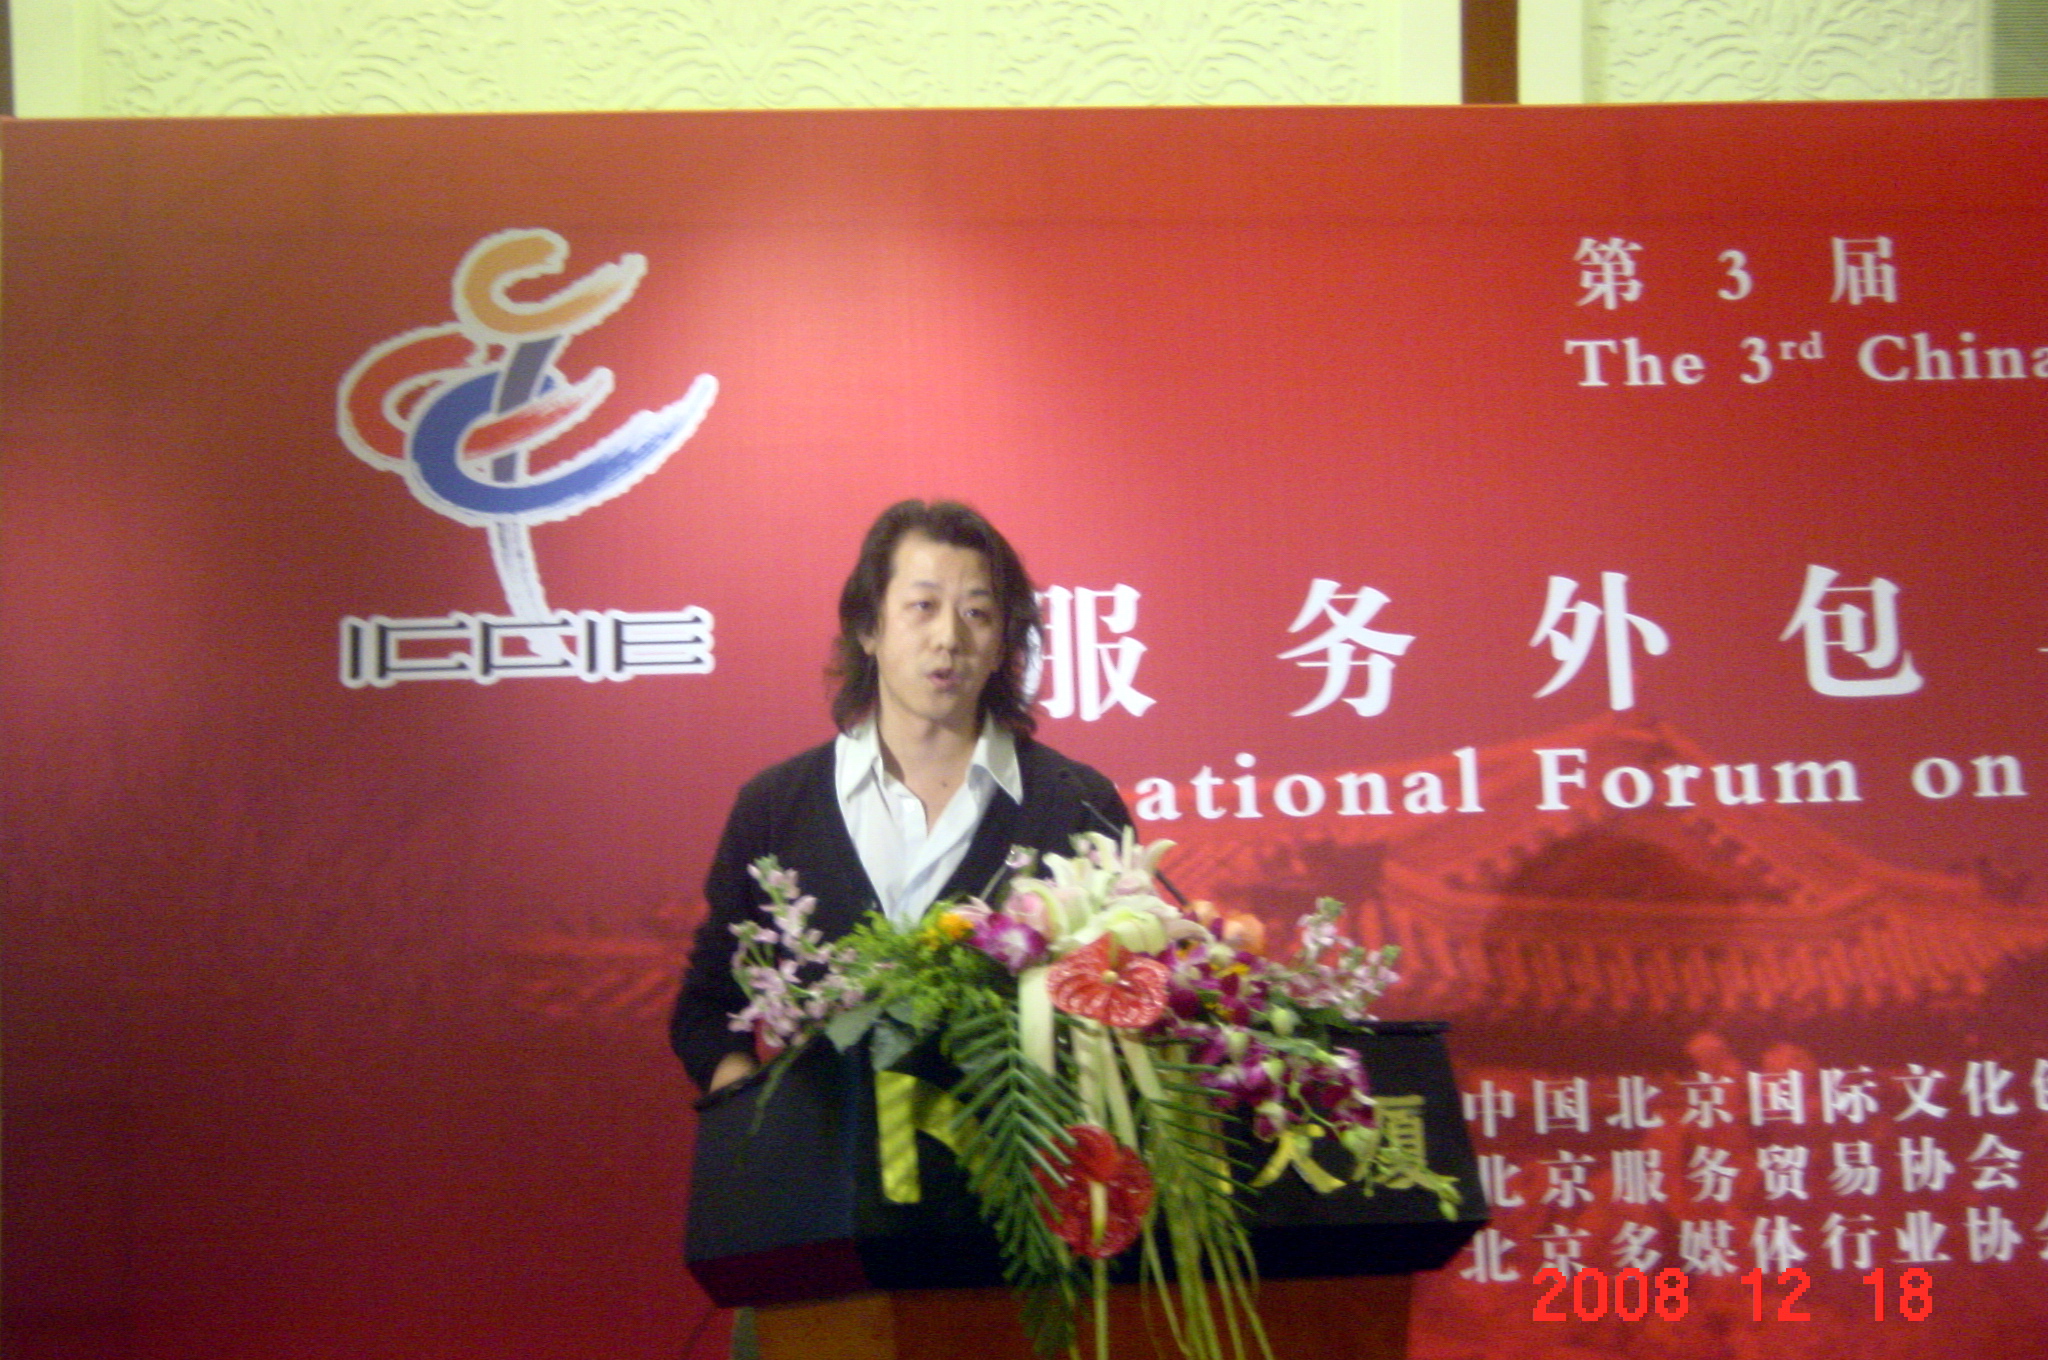 水晶石CGS负责人李涛先生在论坛发表了题目为“团队和小型公司的商机”的演讲